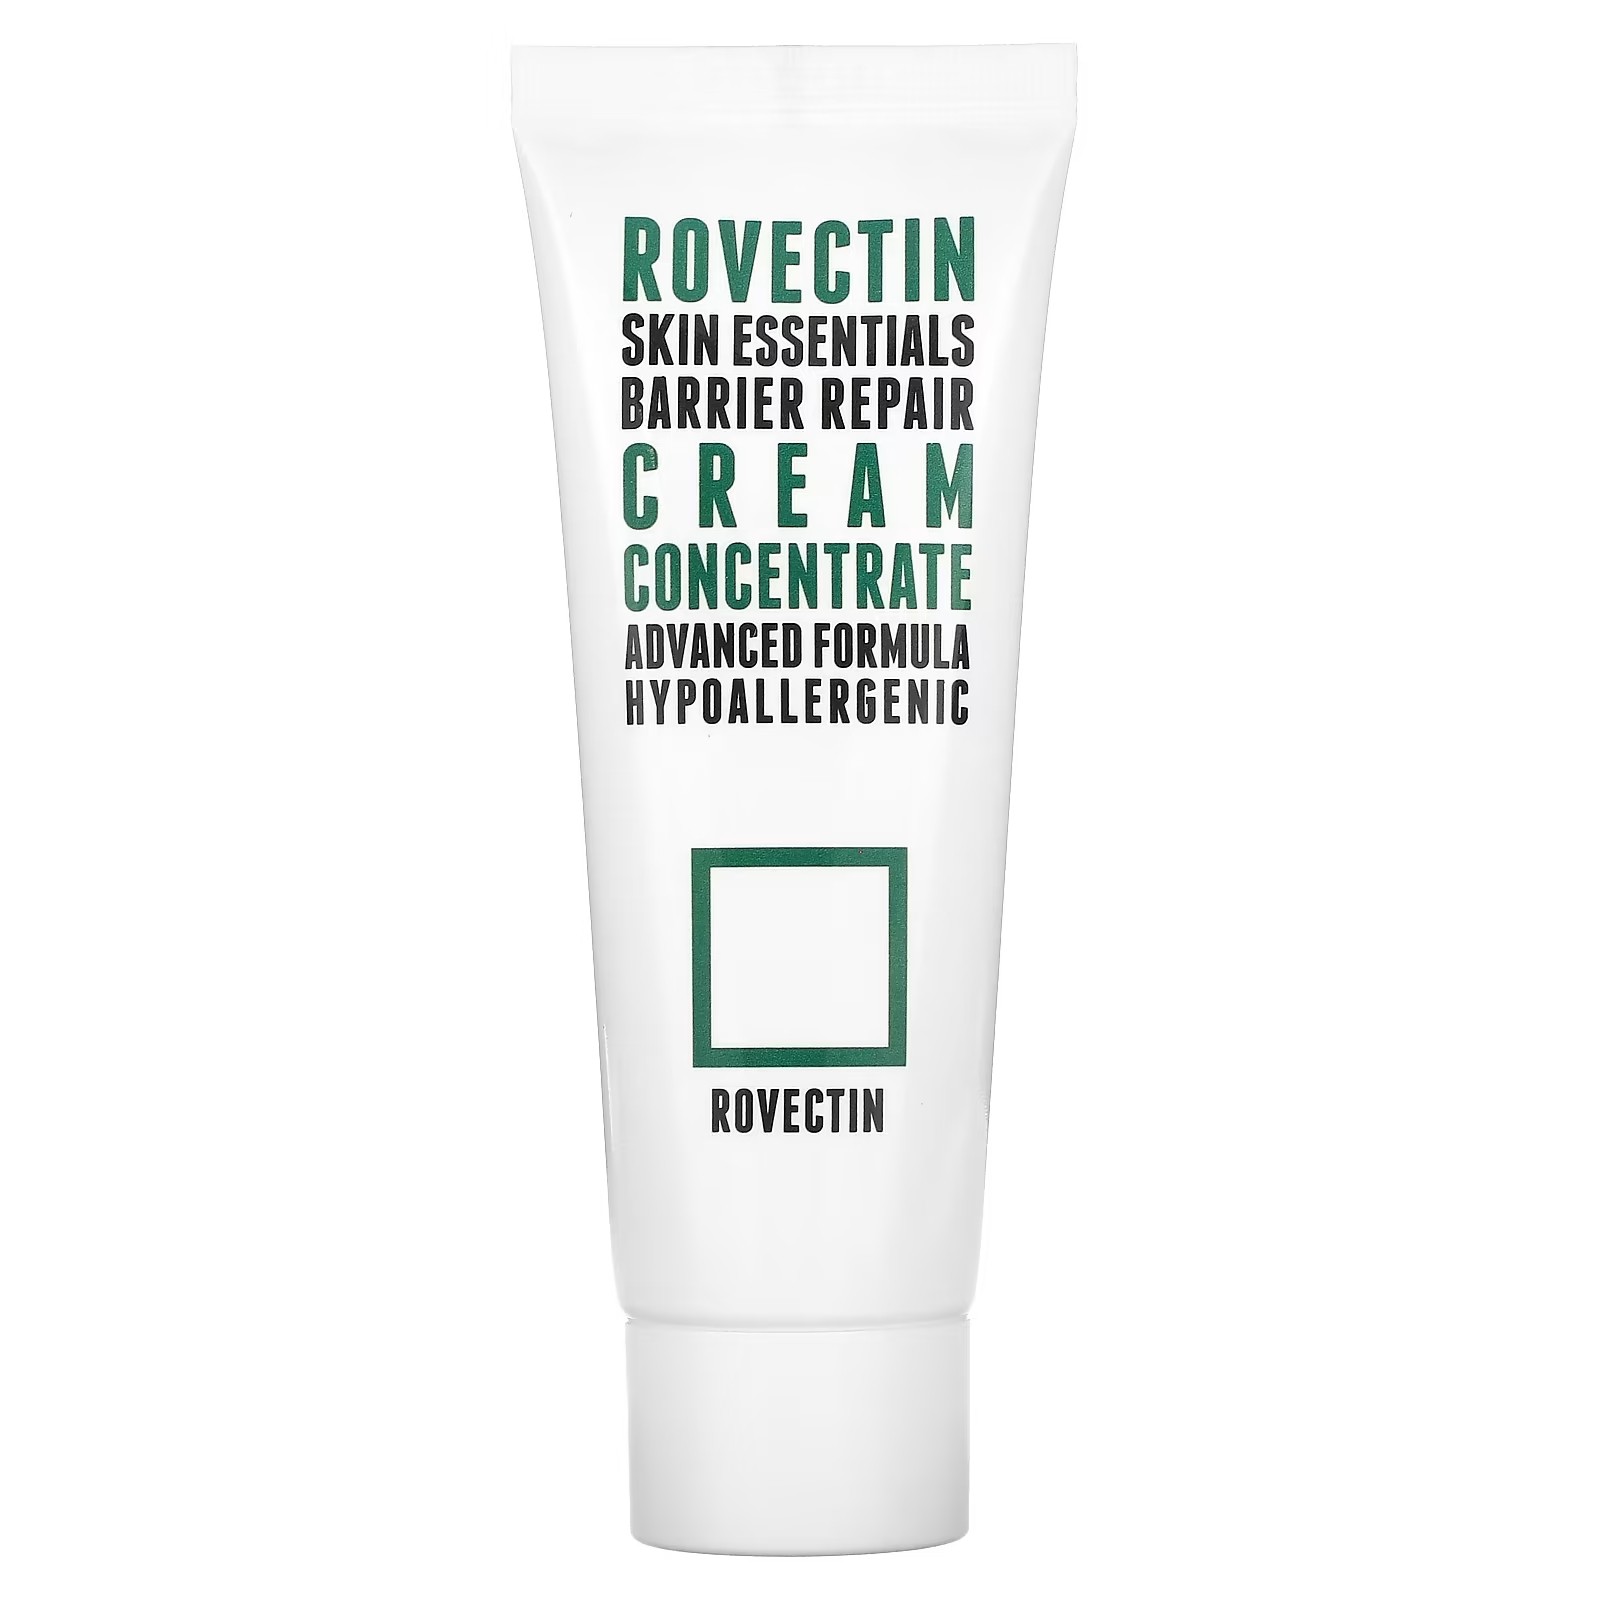 Концентрат Rovectin Skin Essential Barrier Repair Cream rovectin skin essentials восстанавливающий барьерный крем для лица и тела 175 мл 6 1 жидк унции